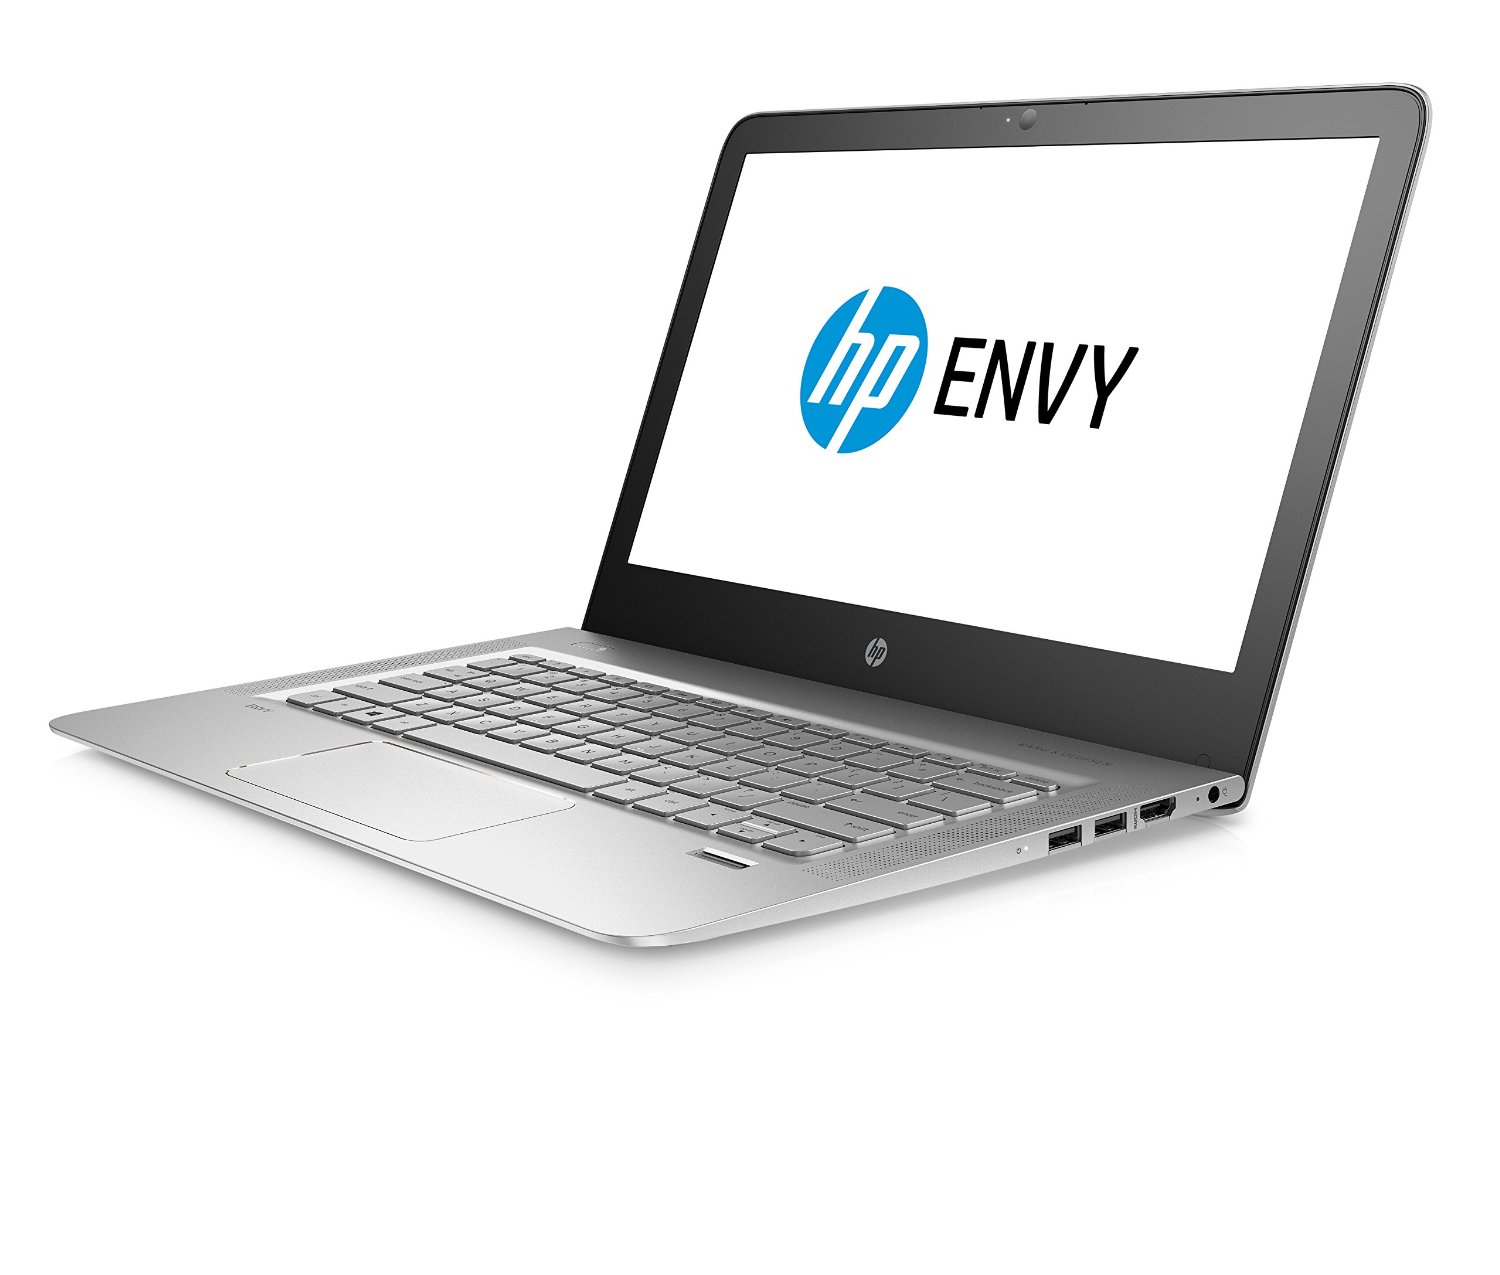 HP Envy 13-ab009ns